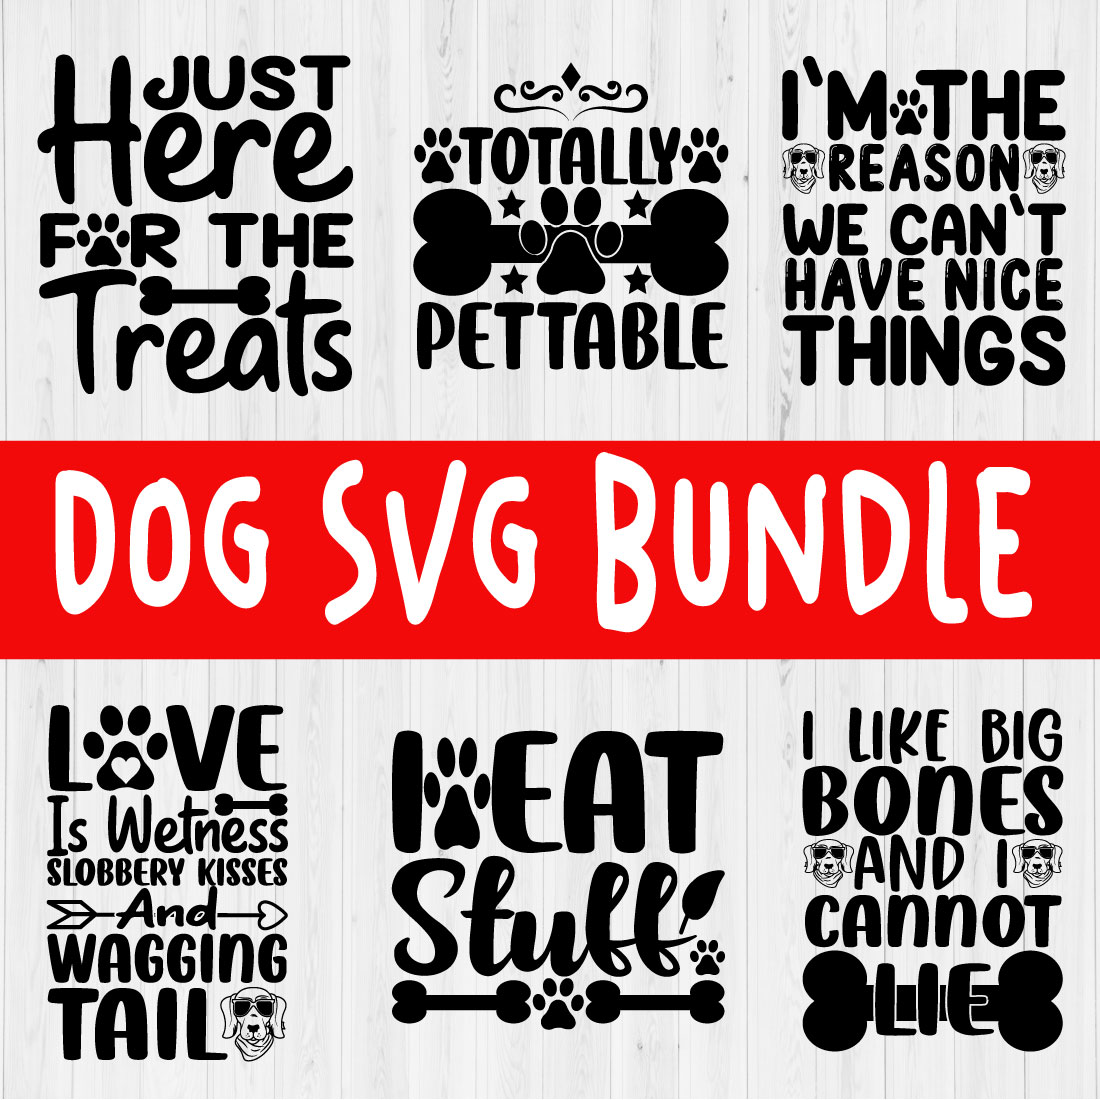 Dog Svg Design Bundle Vol17 cover image.